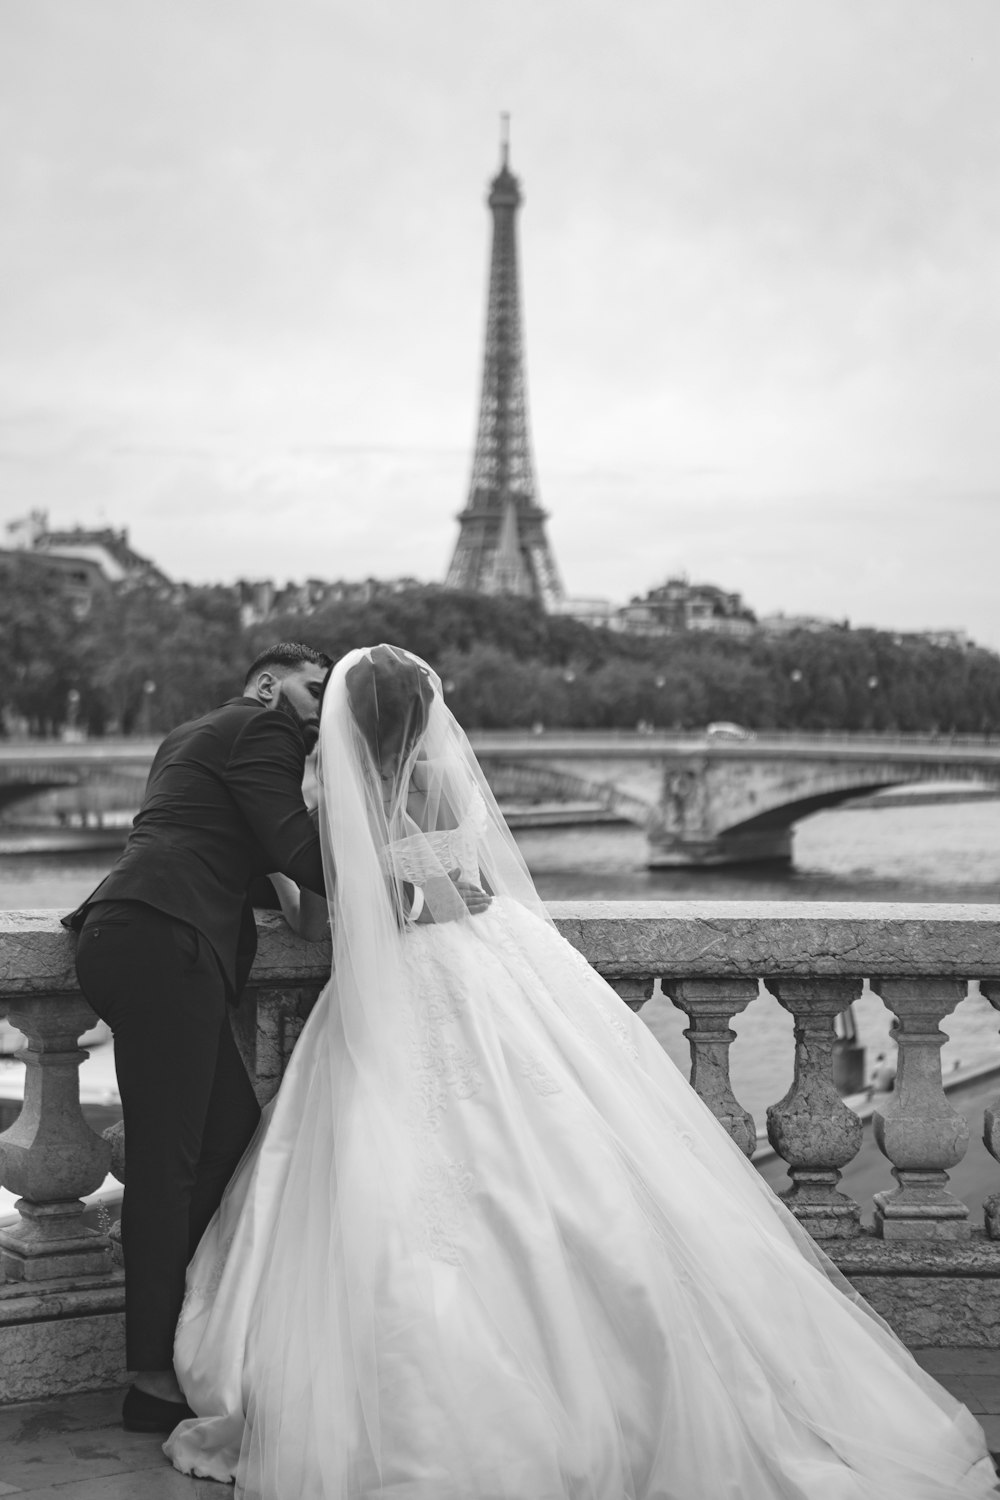 エッフェル塔の前での結婚式のカップルのグレースケール写真